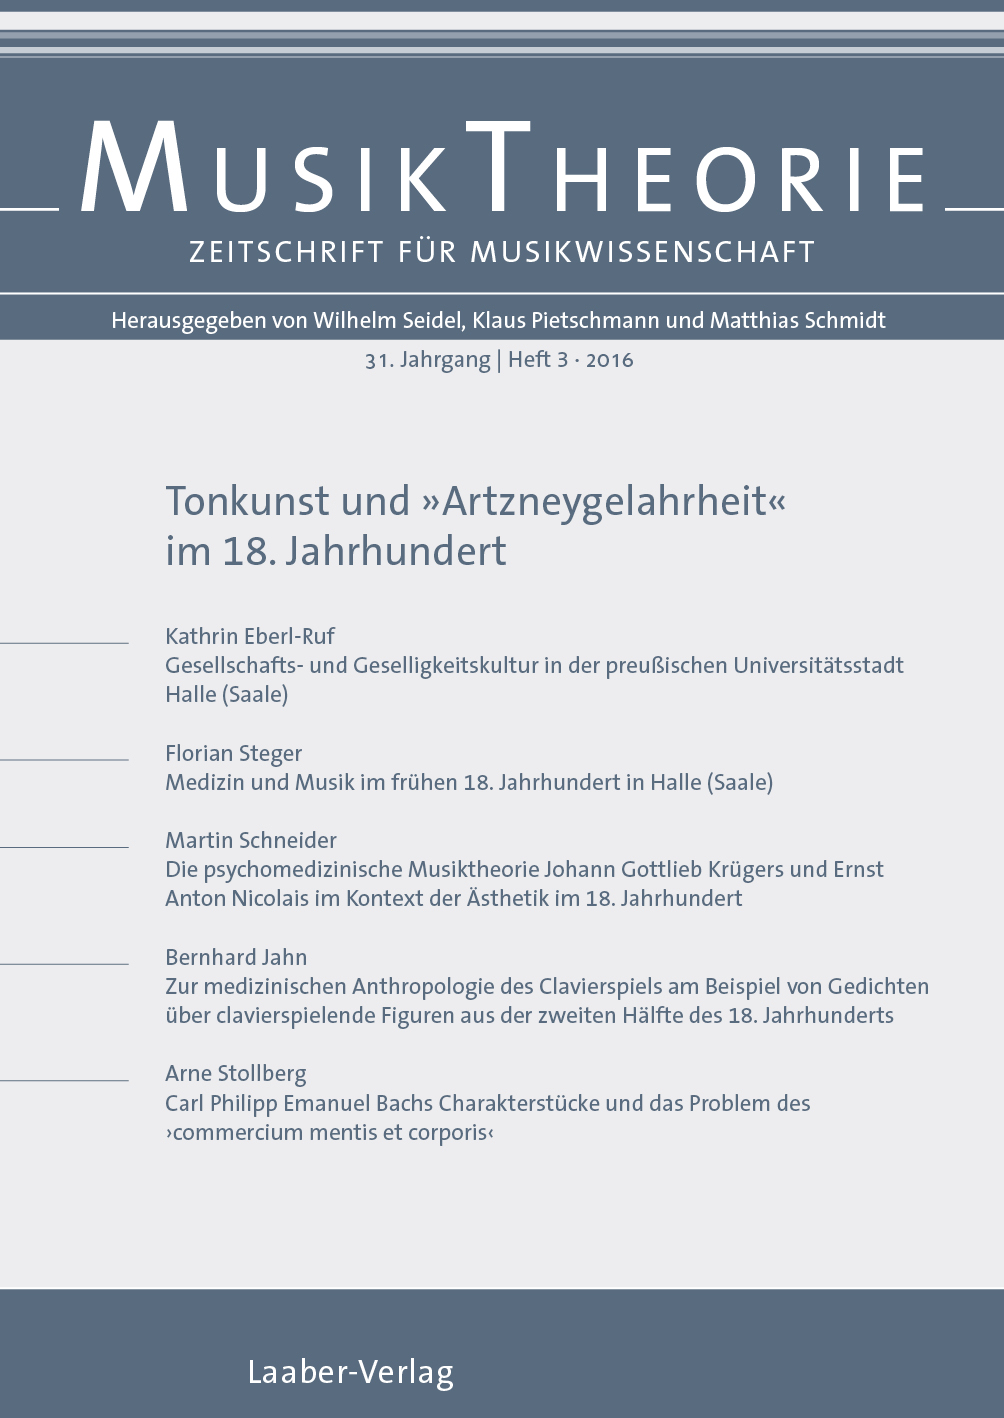 Musiktheorie Heft 3/2016